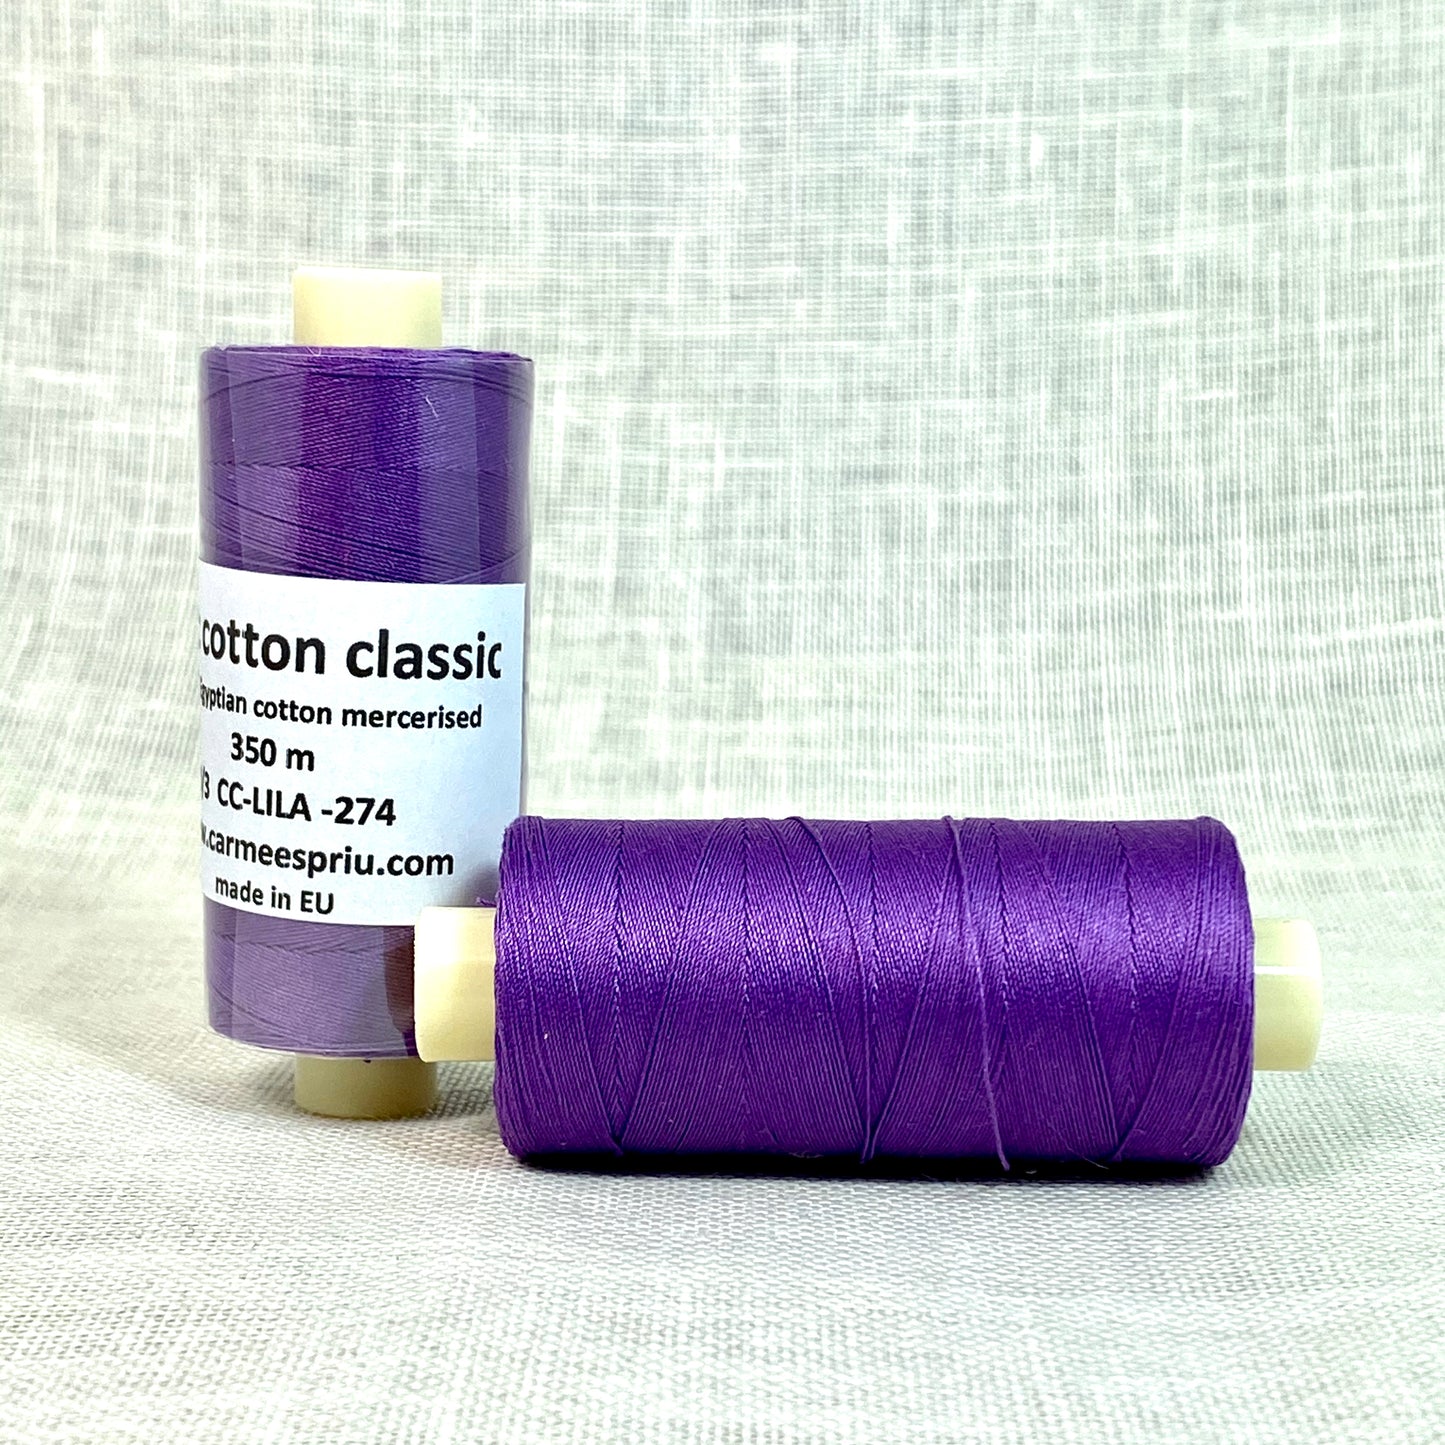 Basic cotton classic lila nº 274